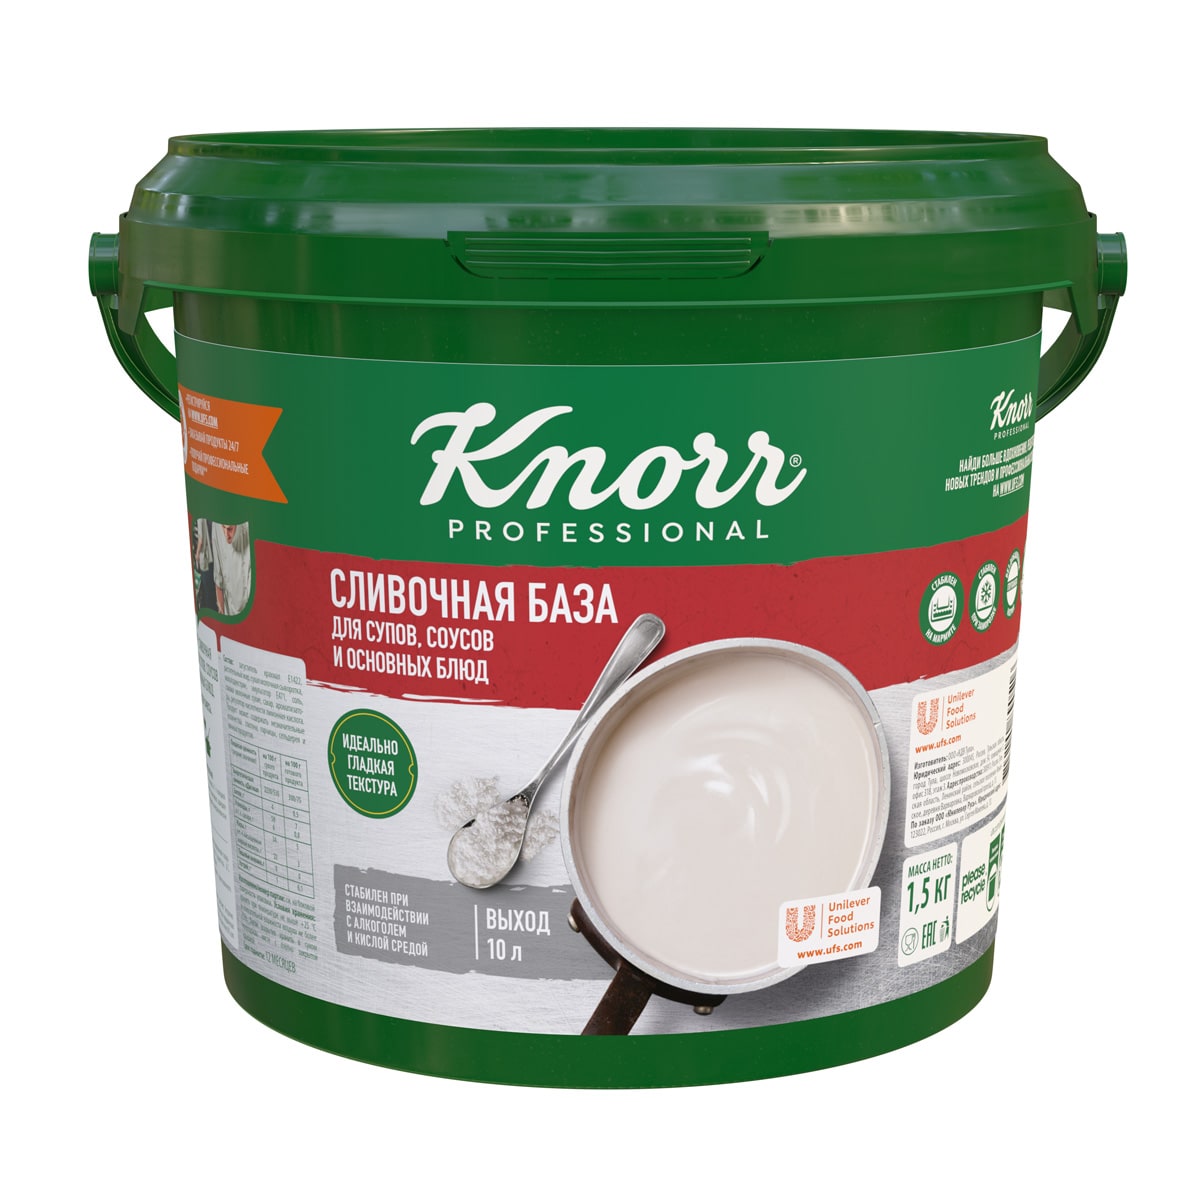 KNORR PROFESSIONAL Сливочная база для супов, соусов и основных блюд. Сухая смесь (1,5 кг) - Создана шефами для шефов